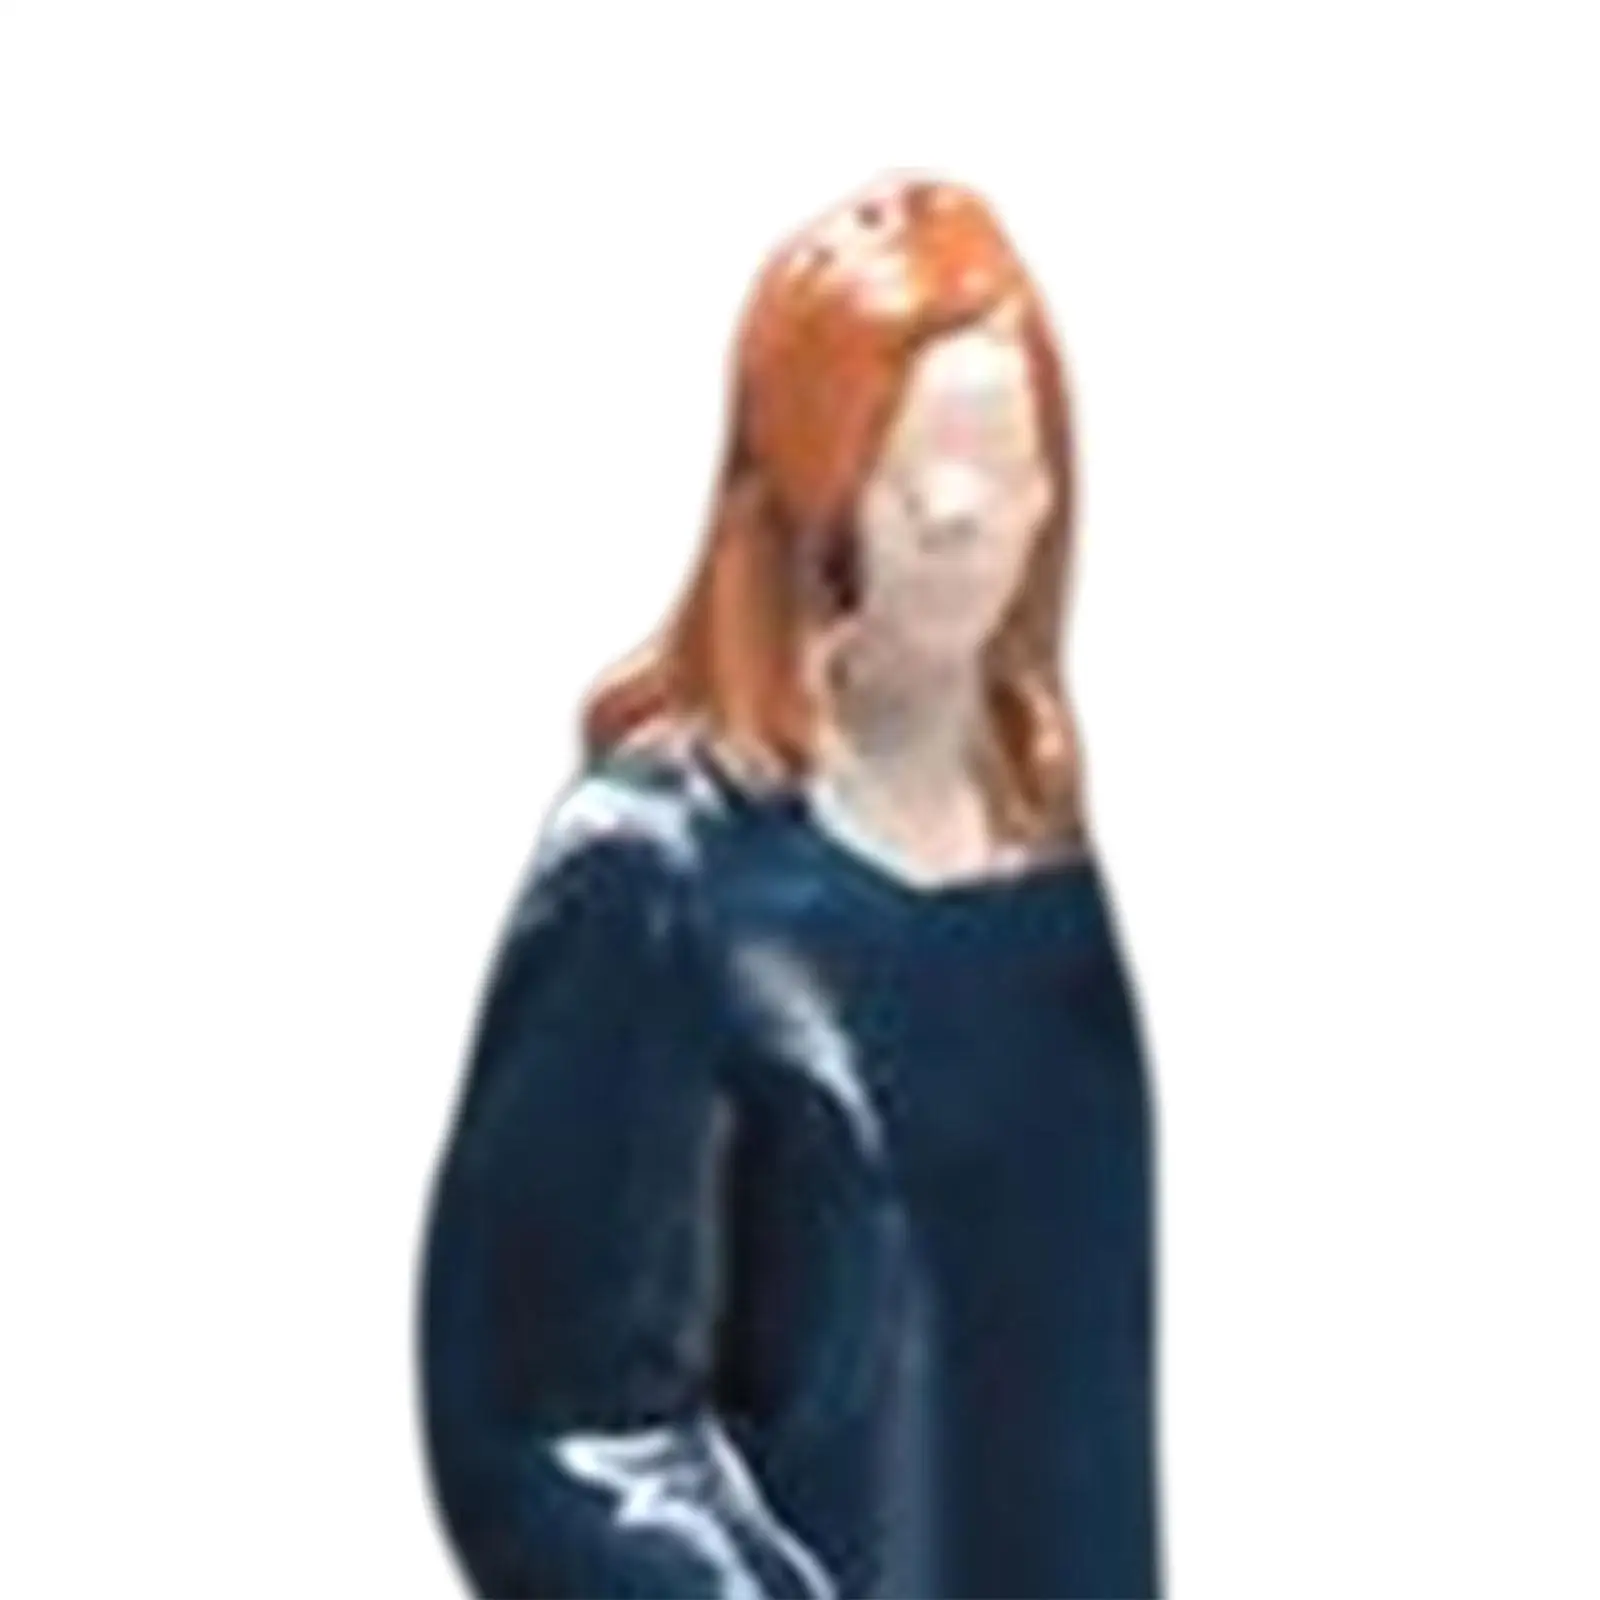 1/64 Scale People Figurines Tiny People Desktop Ornament Miniature People Model